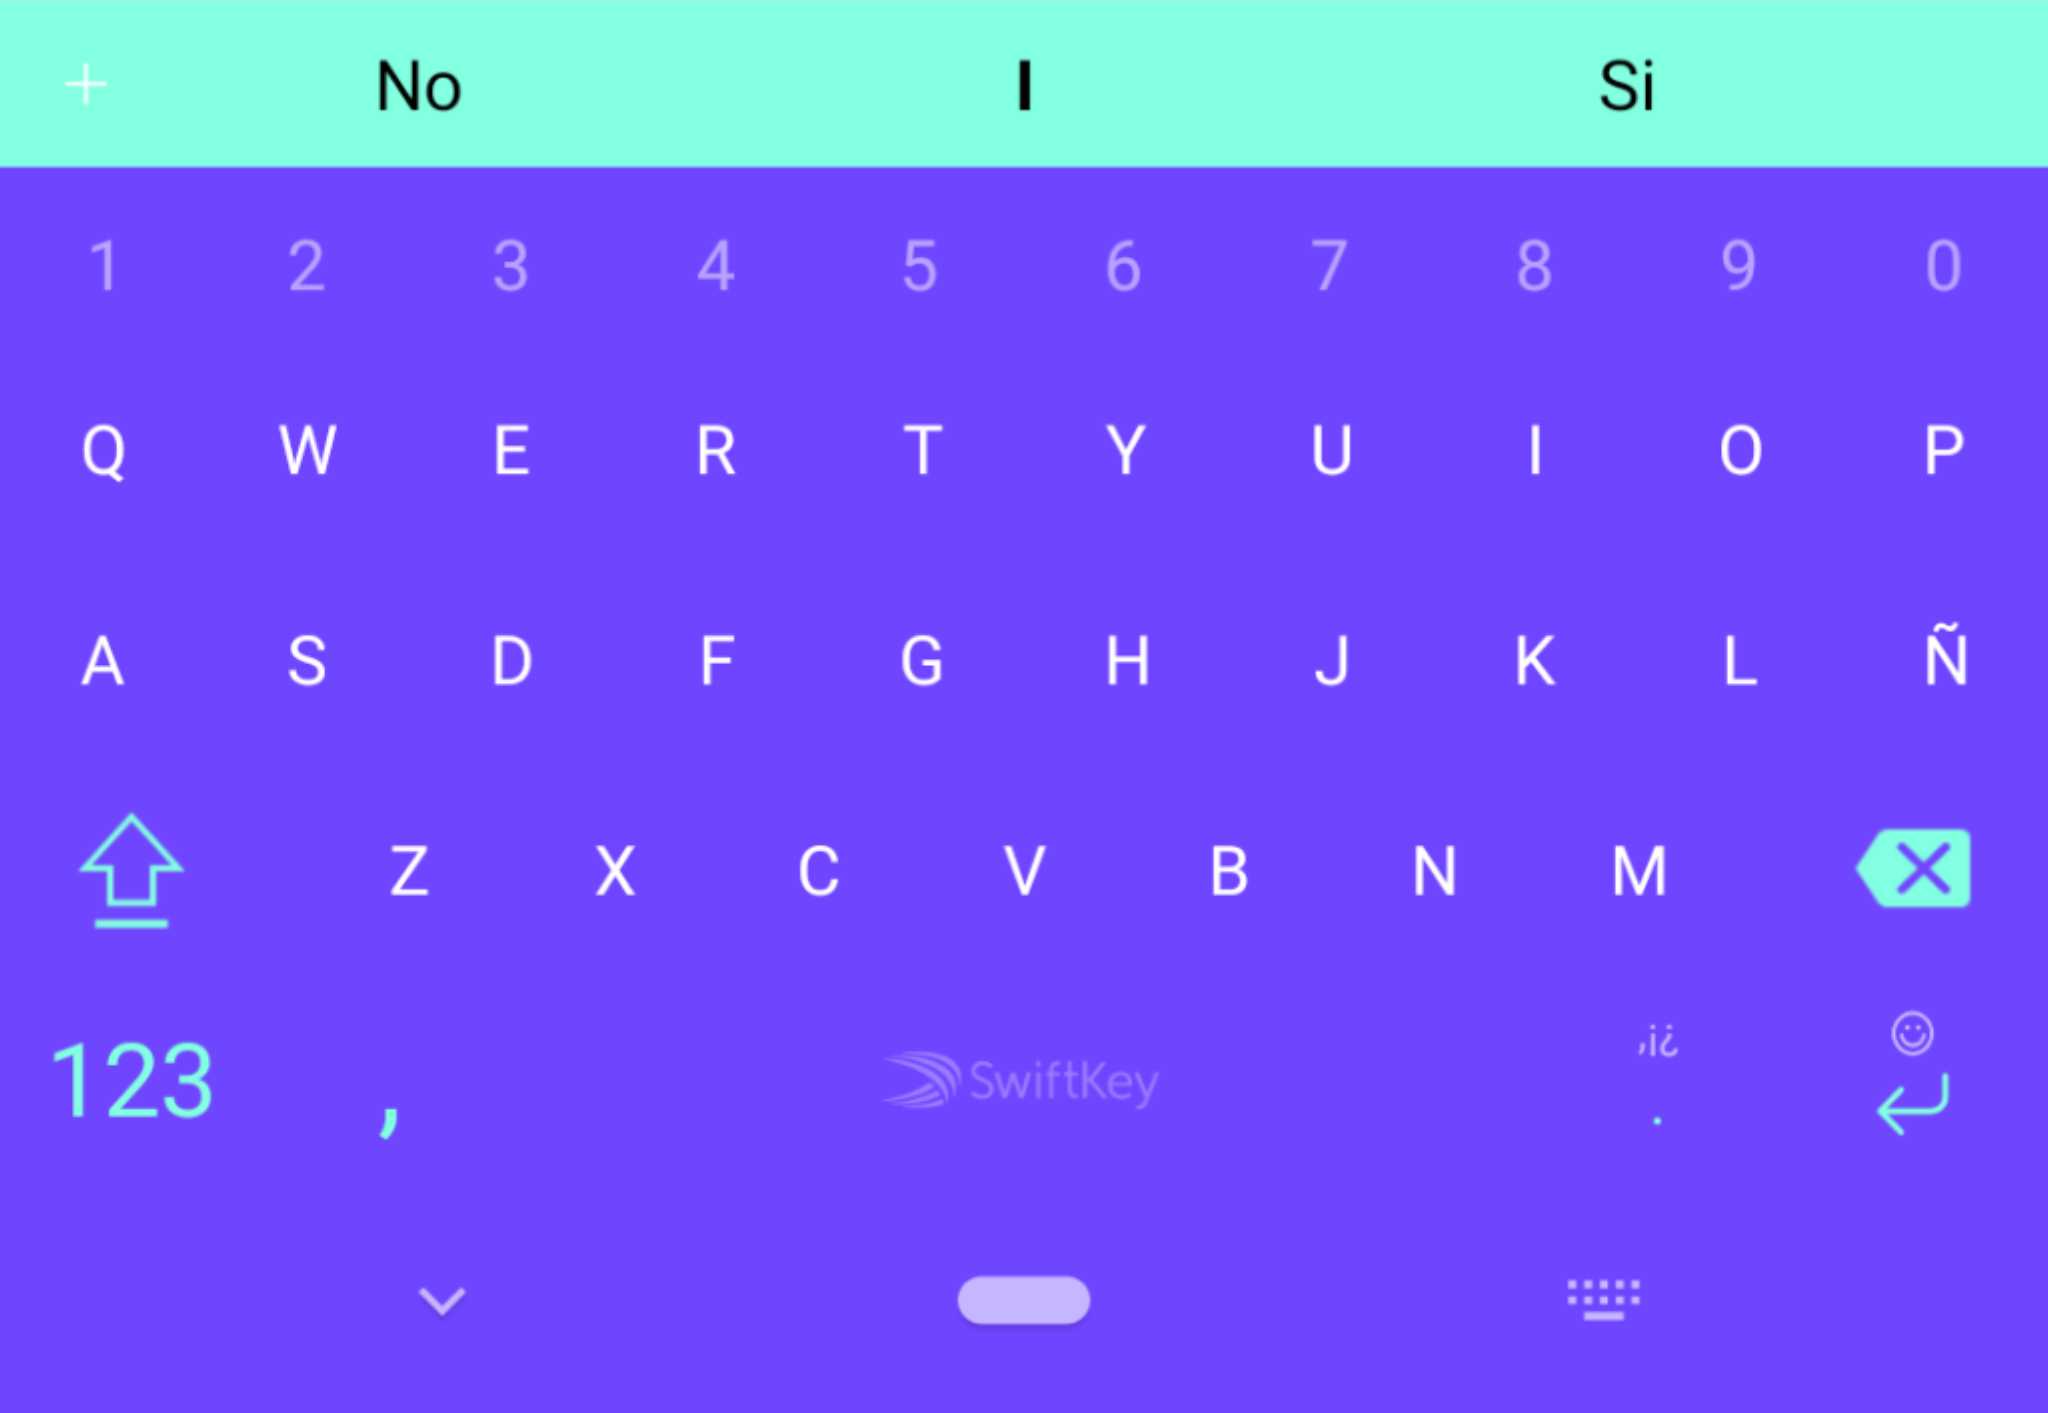 لوحة سويفتكي تدعم تلوين شريط التنقل بناءً على لون خلفية المفاتيح